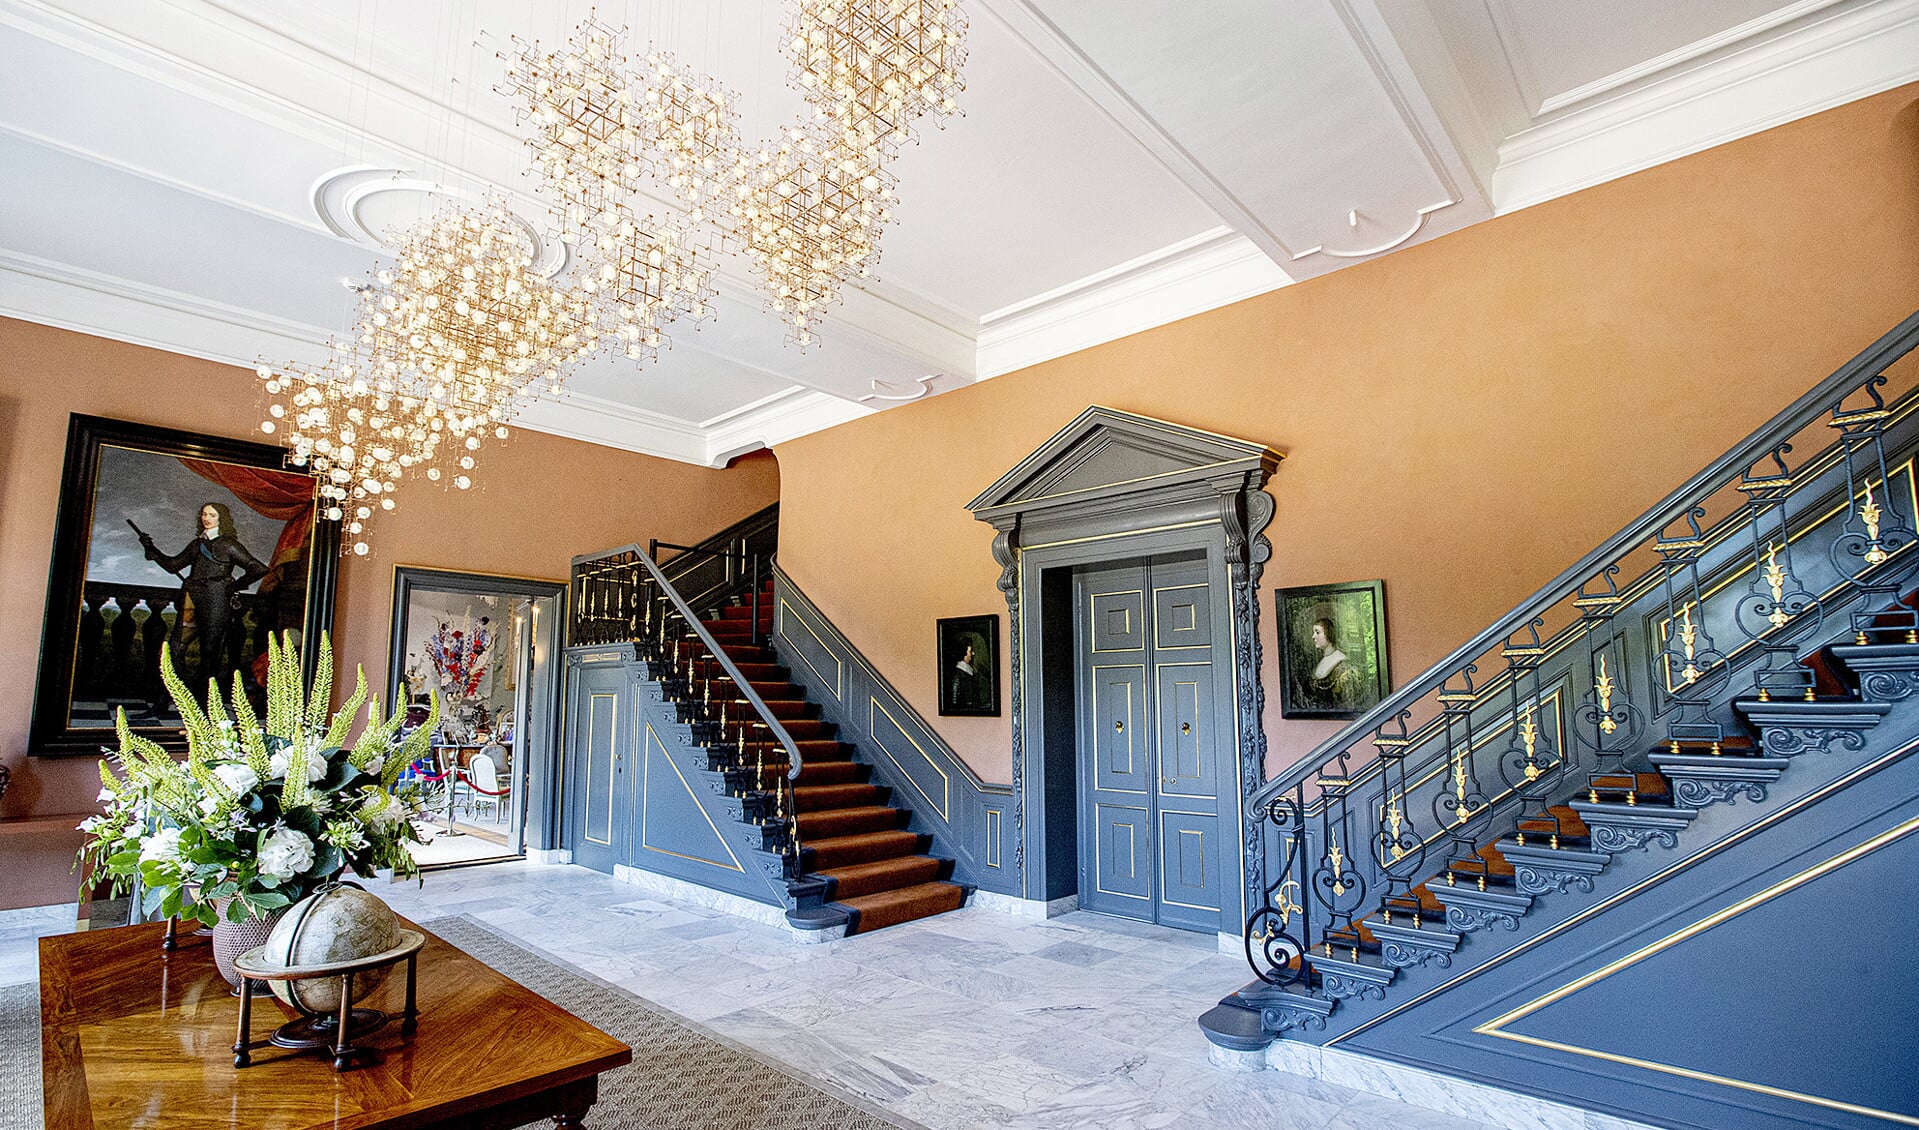 Interieur van Paleis Huis ten Bosch. De woning van koning Willem-Alexander en zijn gezin is de afgelopen jaren opgeknapt, waarbij volgens NRC te veel staatsgeld gebruikt is.